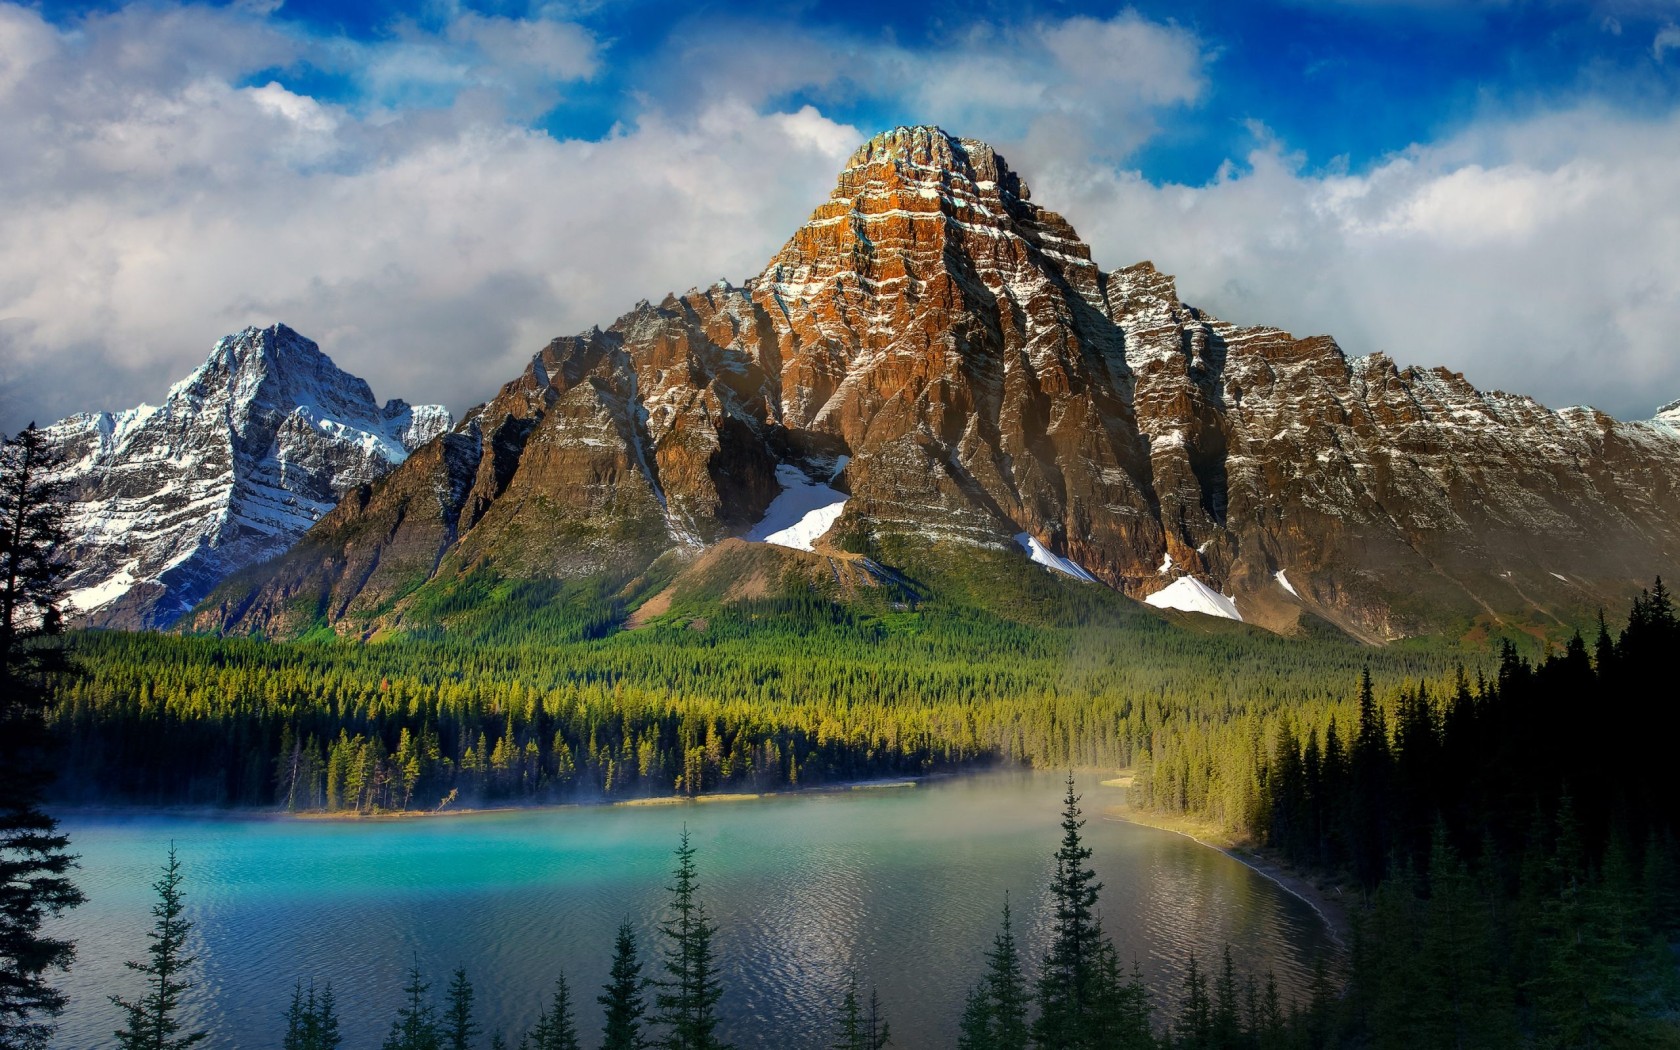 Mount Landscape Scenery iPhone Desktop Wallpapers - Zibrato